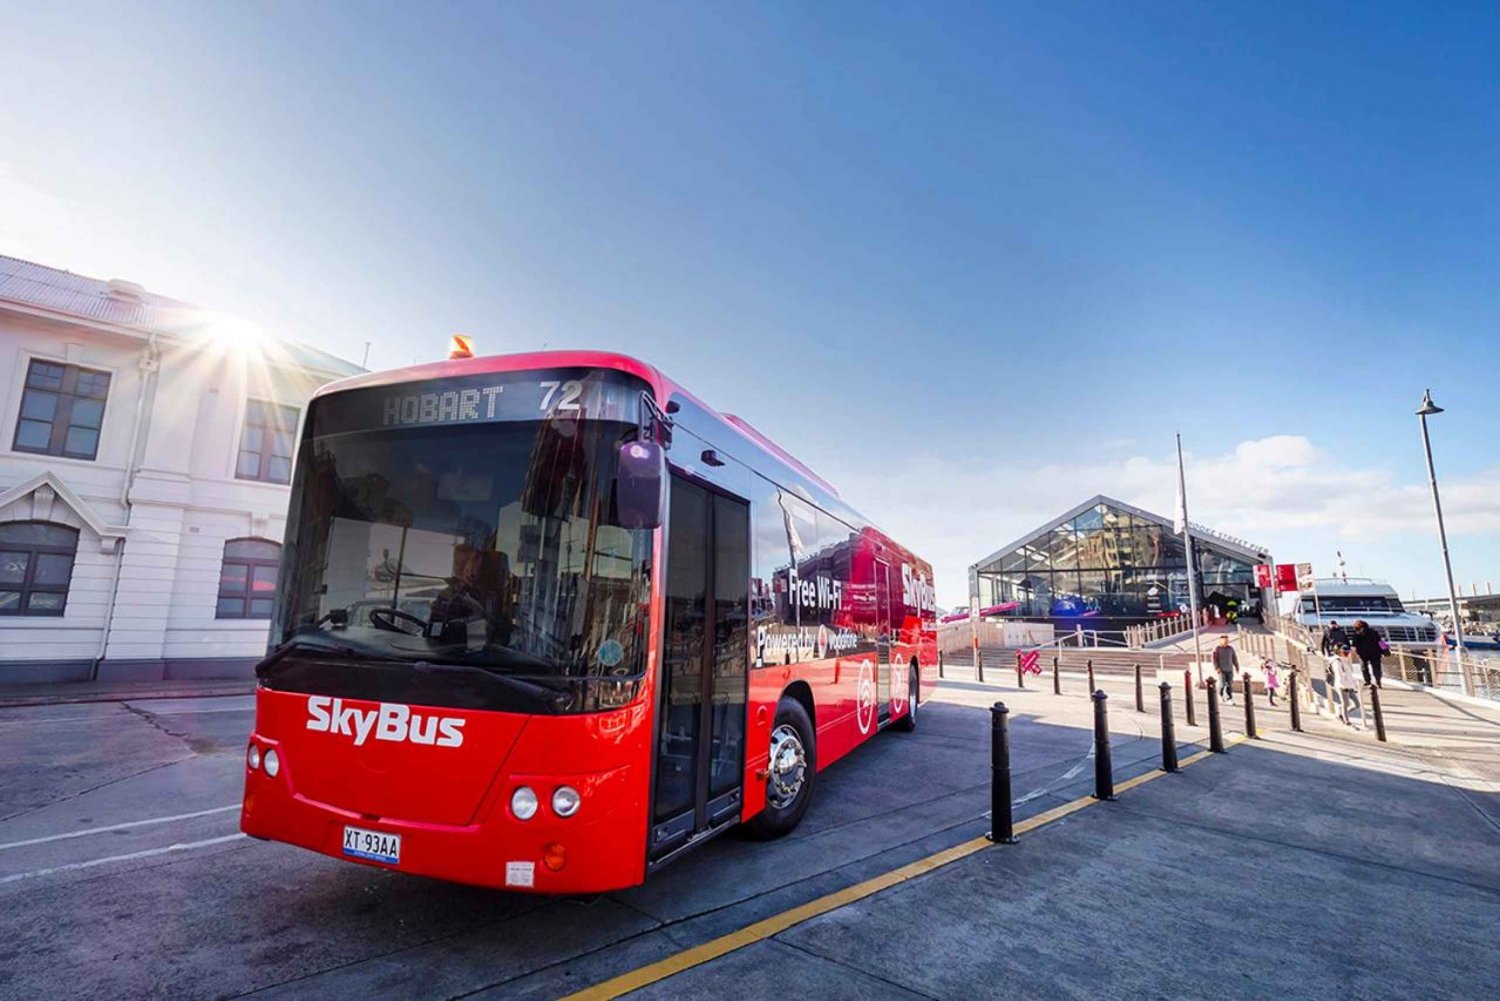 Lotnisko Hobart: ekspresowy transfer autobusem do miasta Hobart